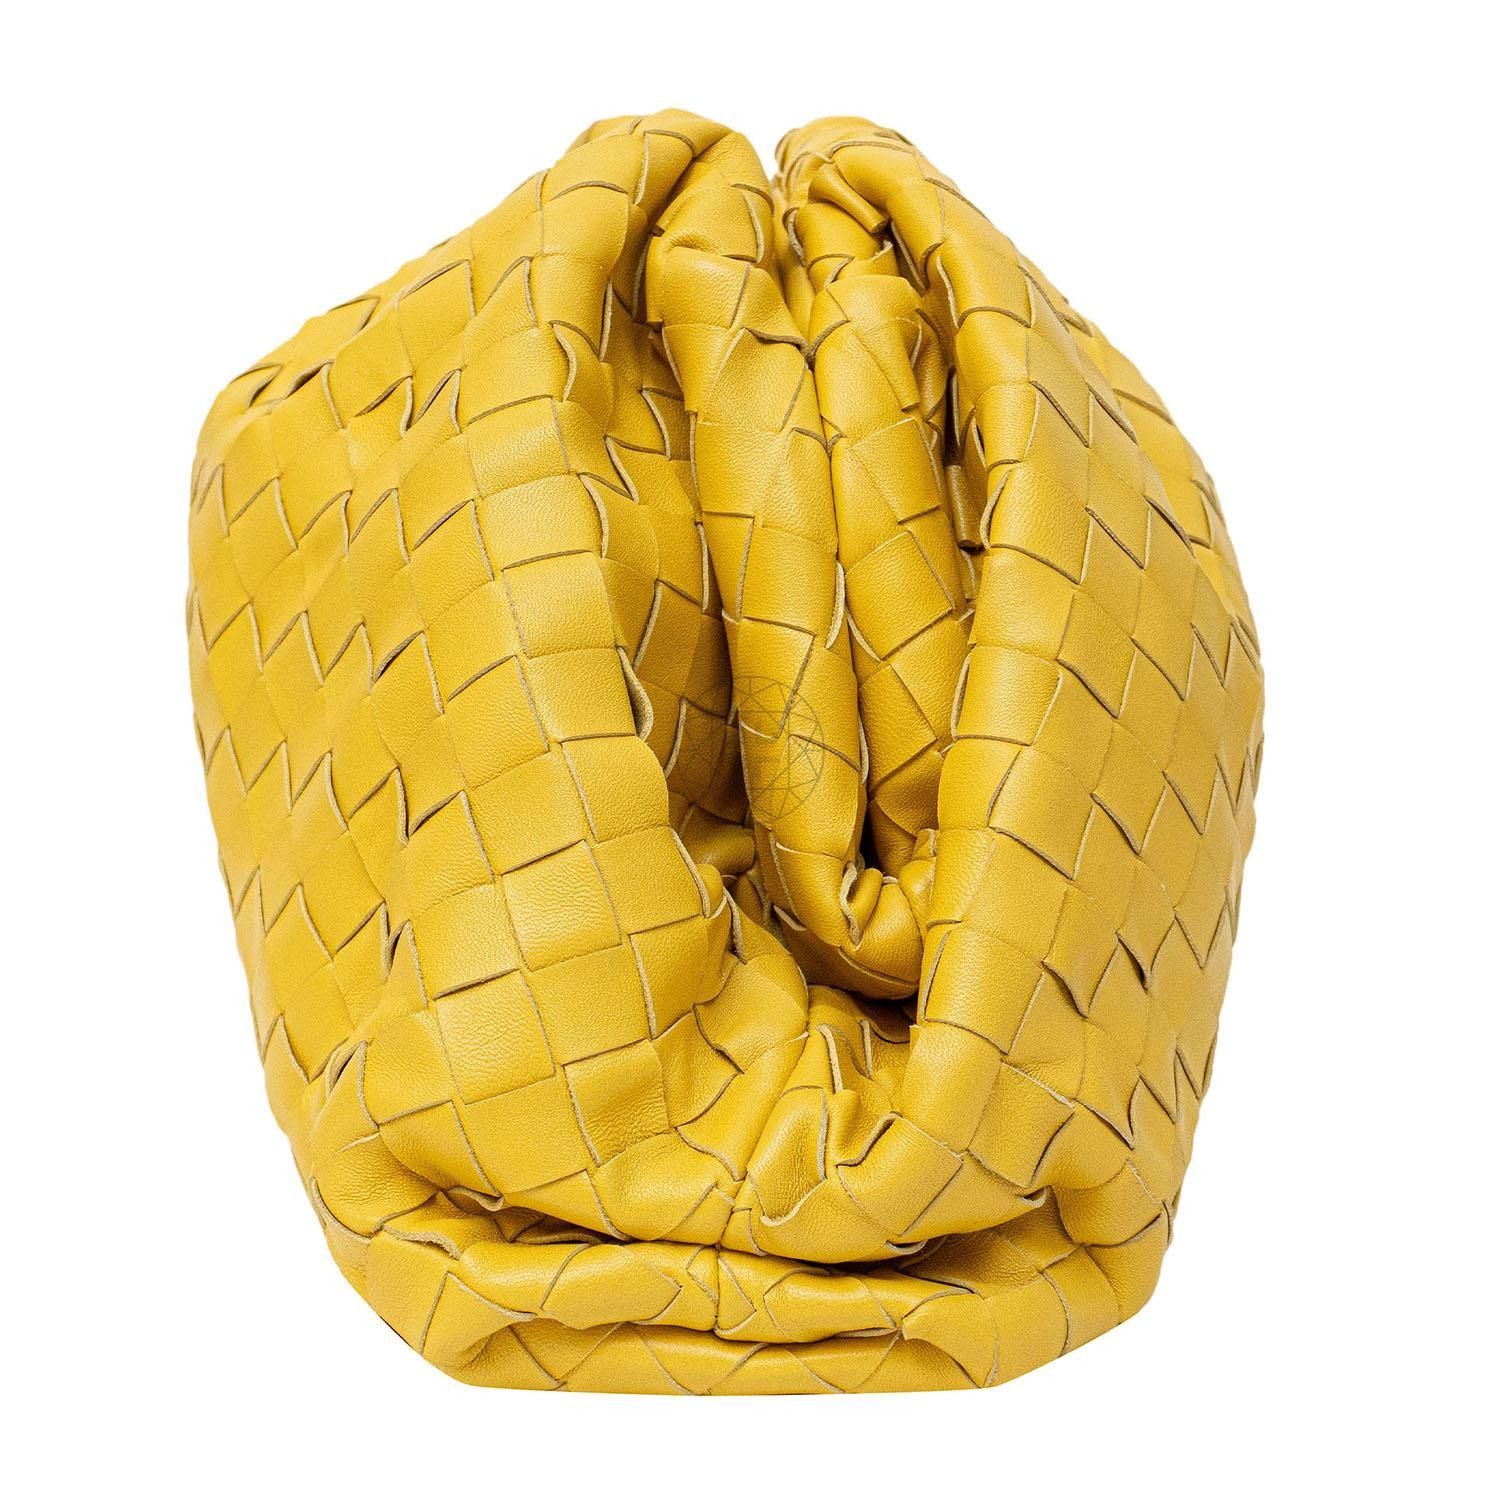 Bottega Veneta Small Intrecciato Leather Shoulder Bag in Lemon